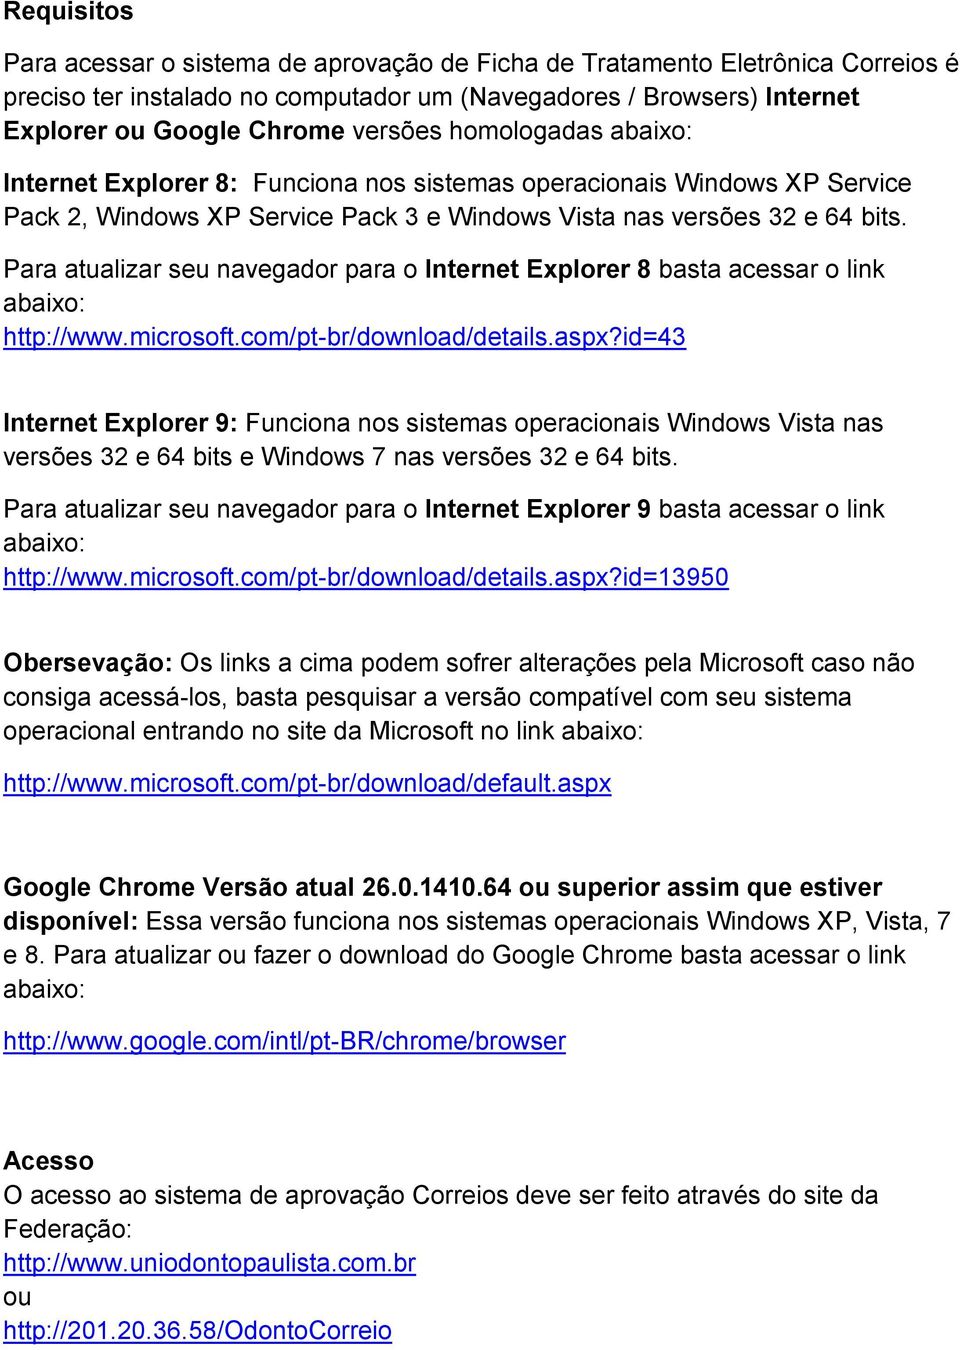 Para atualizar seu navegador para o Internet Explorer 8 basta acessar o link abaixo: http://www.microsoft.com/pt-br/download/details.aspx?